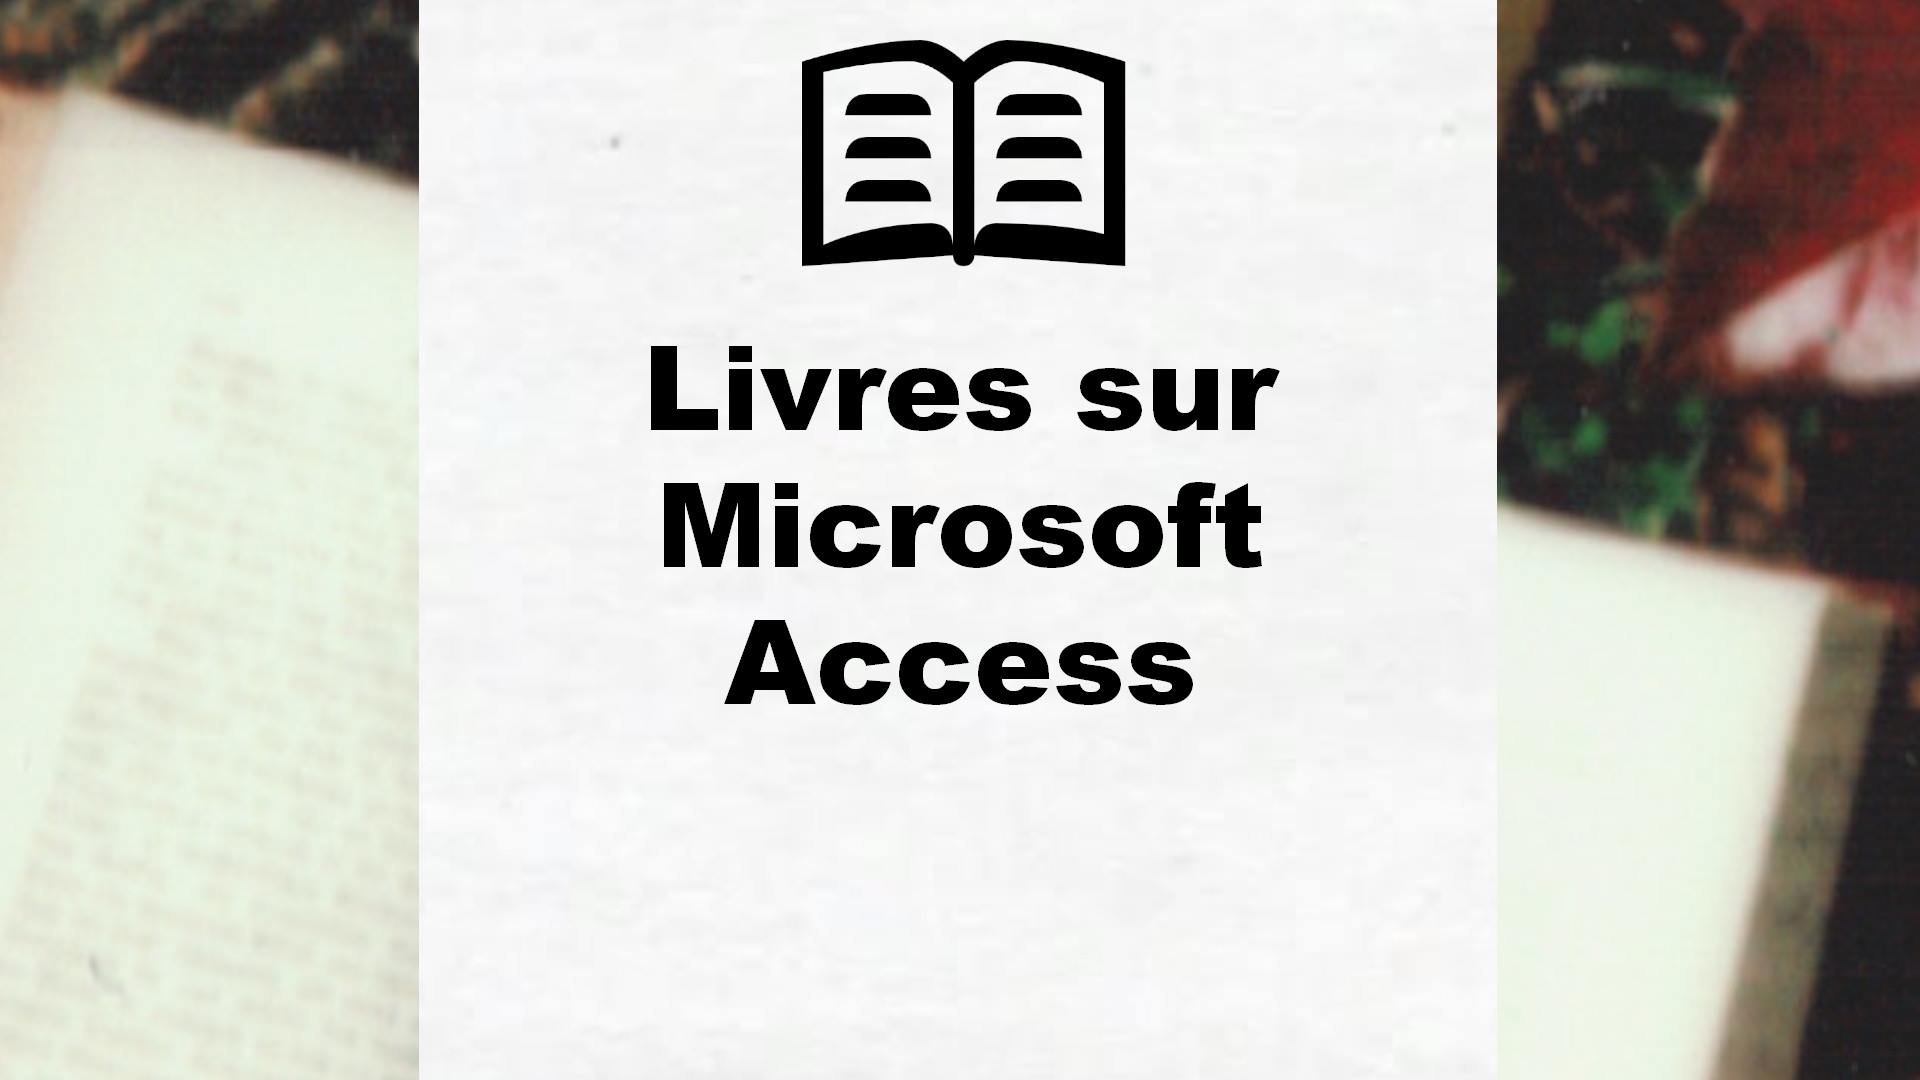 Livres sur Microsoft Access